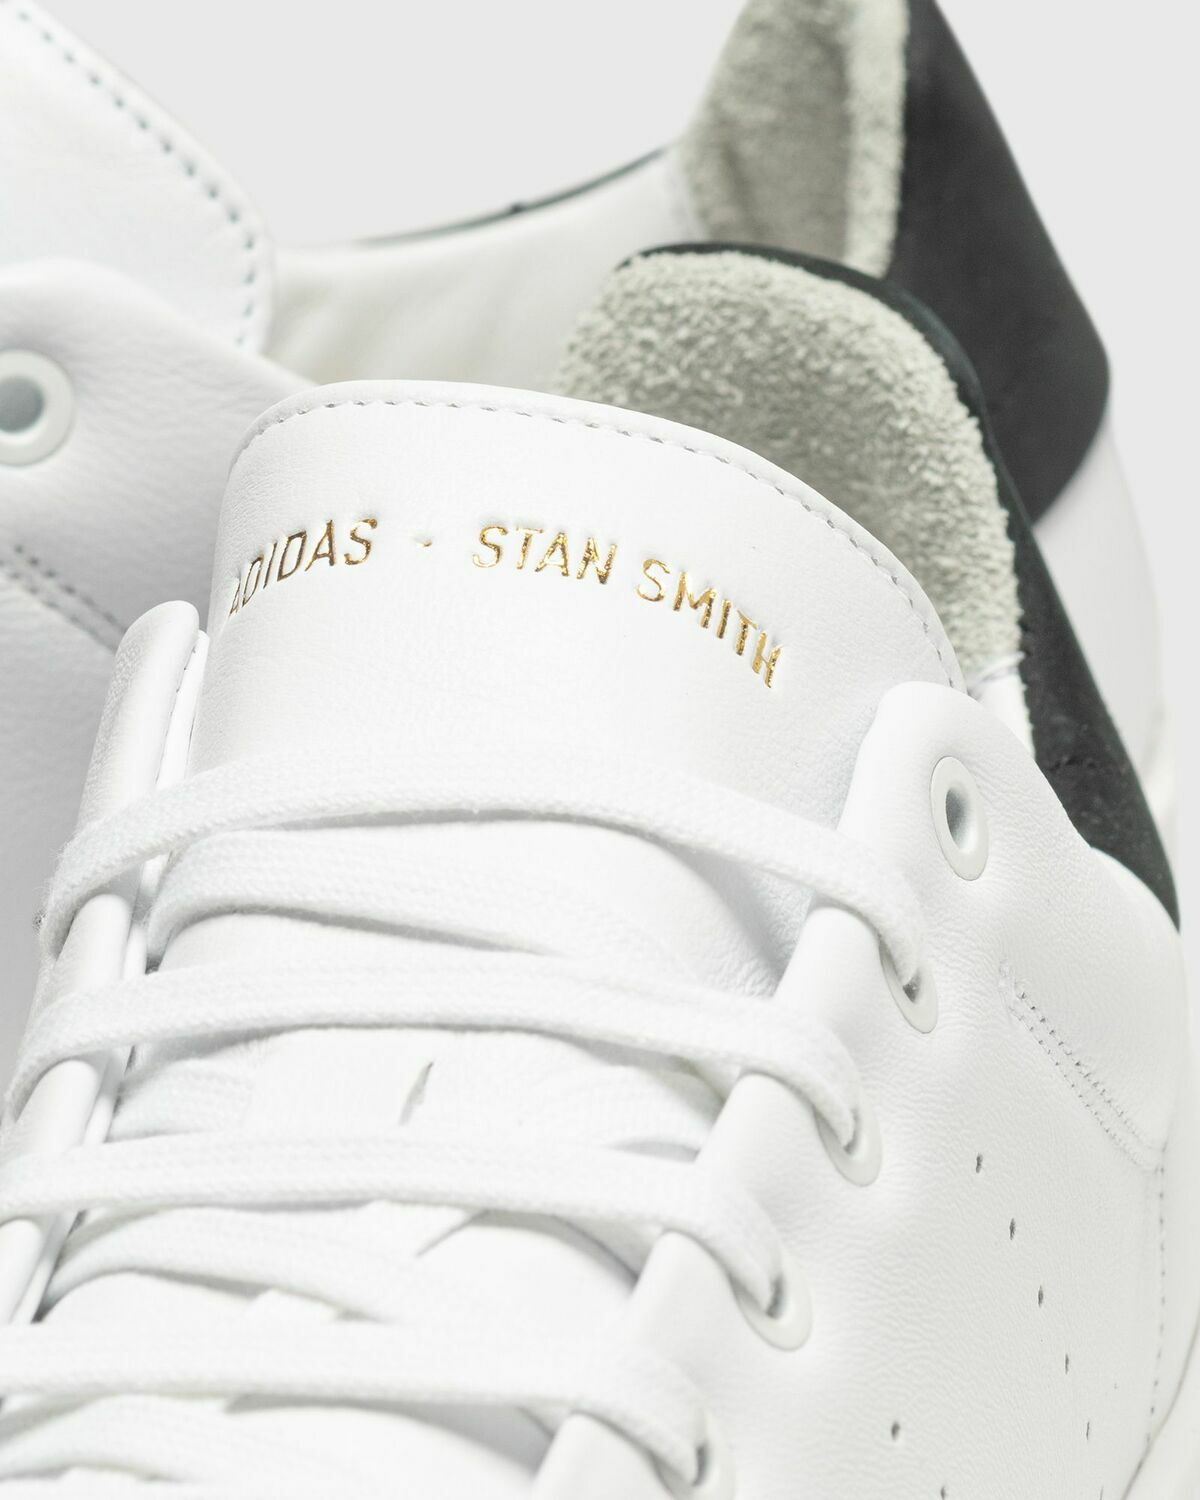 Adidas Stan Smith Recon White - Mens - Lowtop adidas